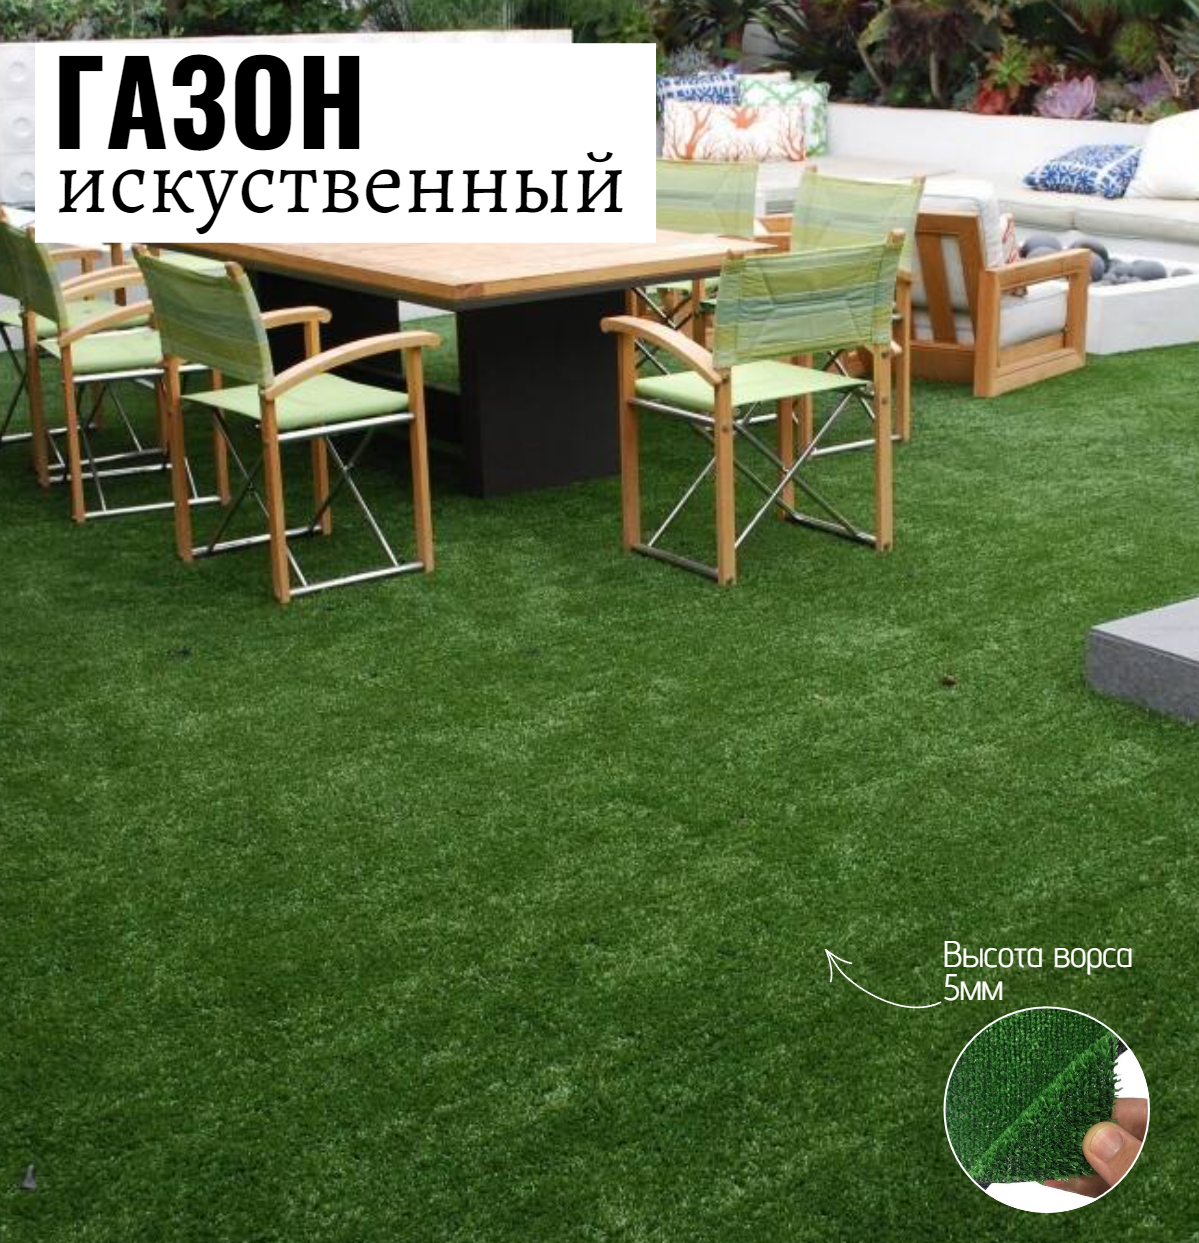 Искусственный газон Салон Ковров газон gzn-2-042 1 шт. 2х4.2м